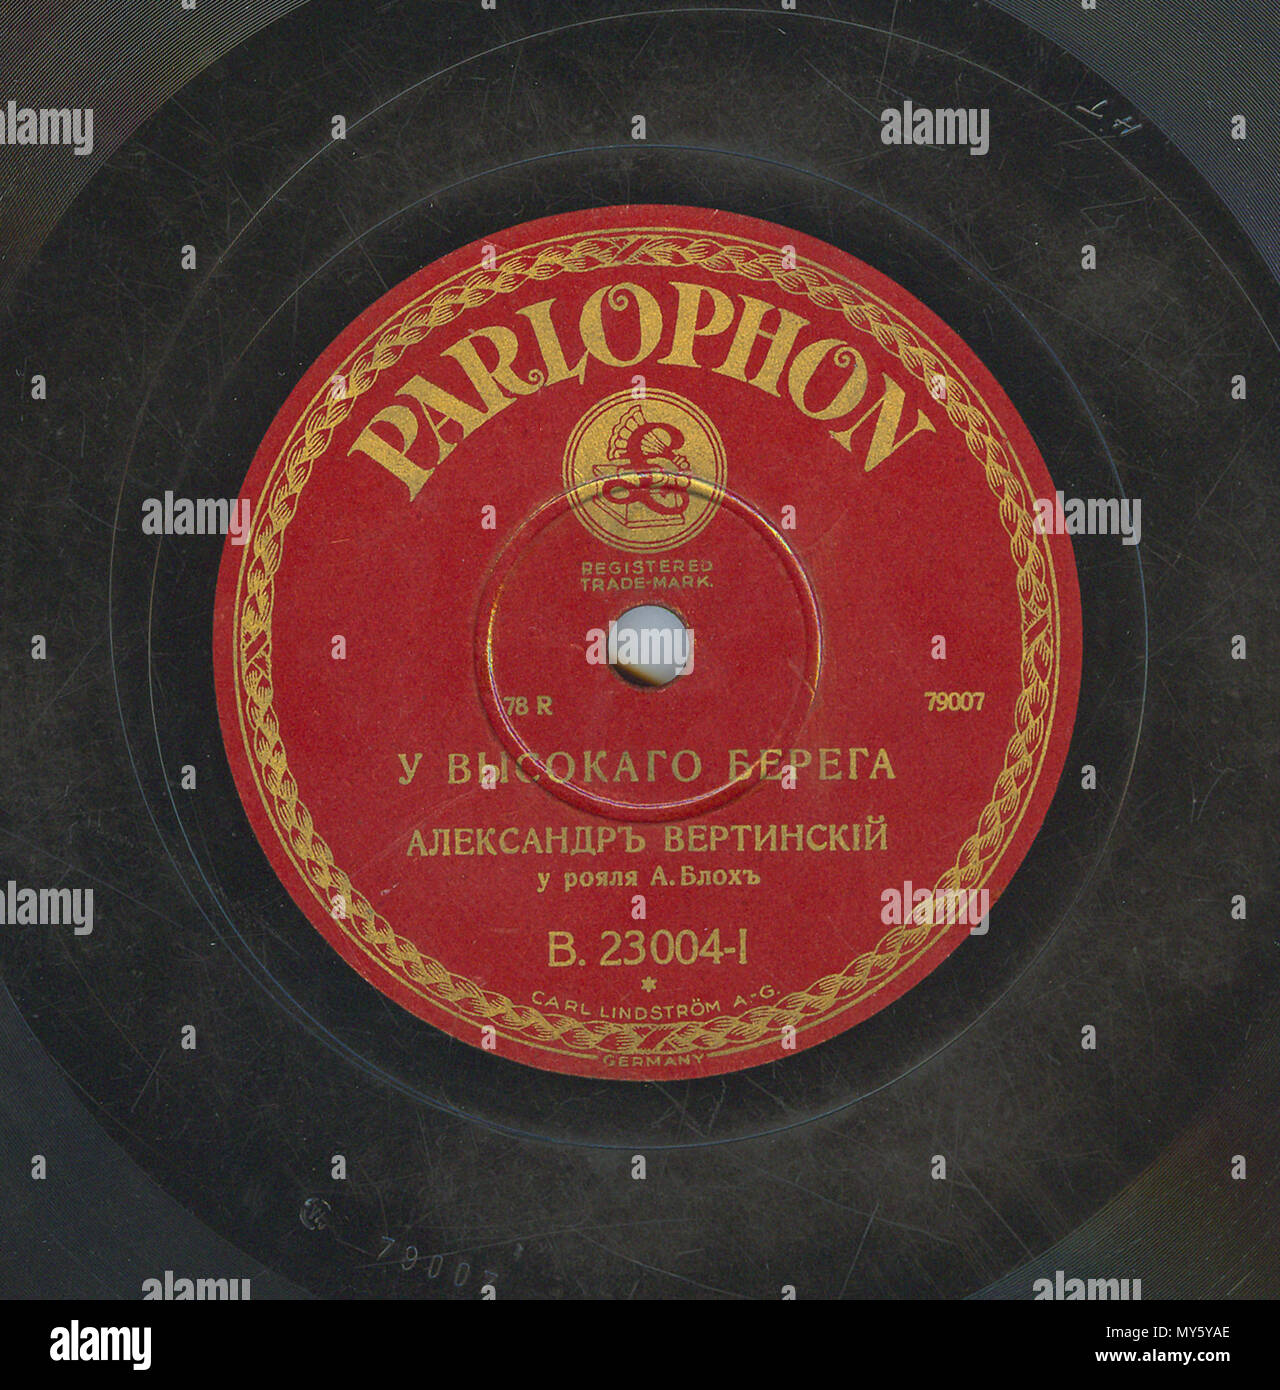 . Englisch: Vertinsky Parlophone B. 23004 01. 6. April 2010, 12:06:37. Parlophone 548 Vertinsky Parlophone B. 23004, 01. Stockfoto